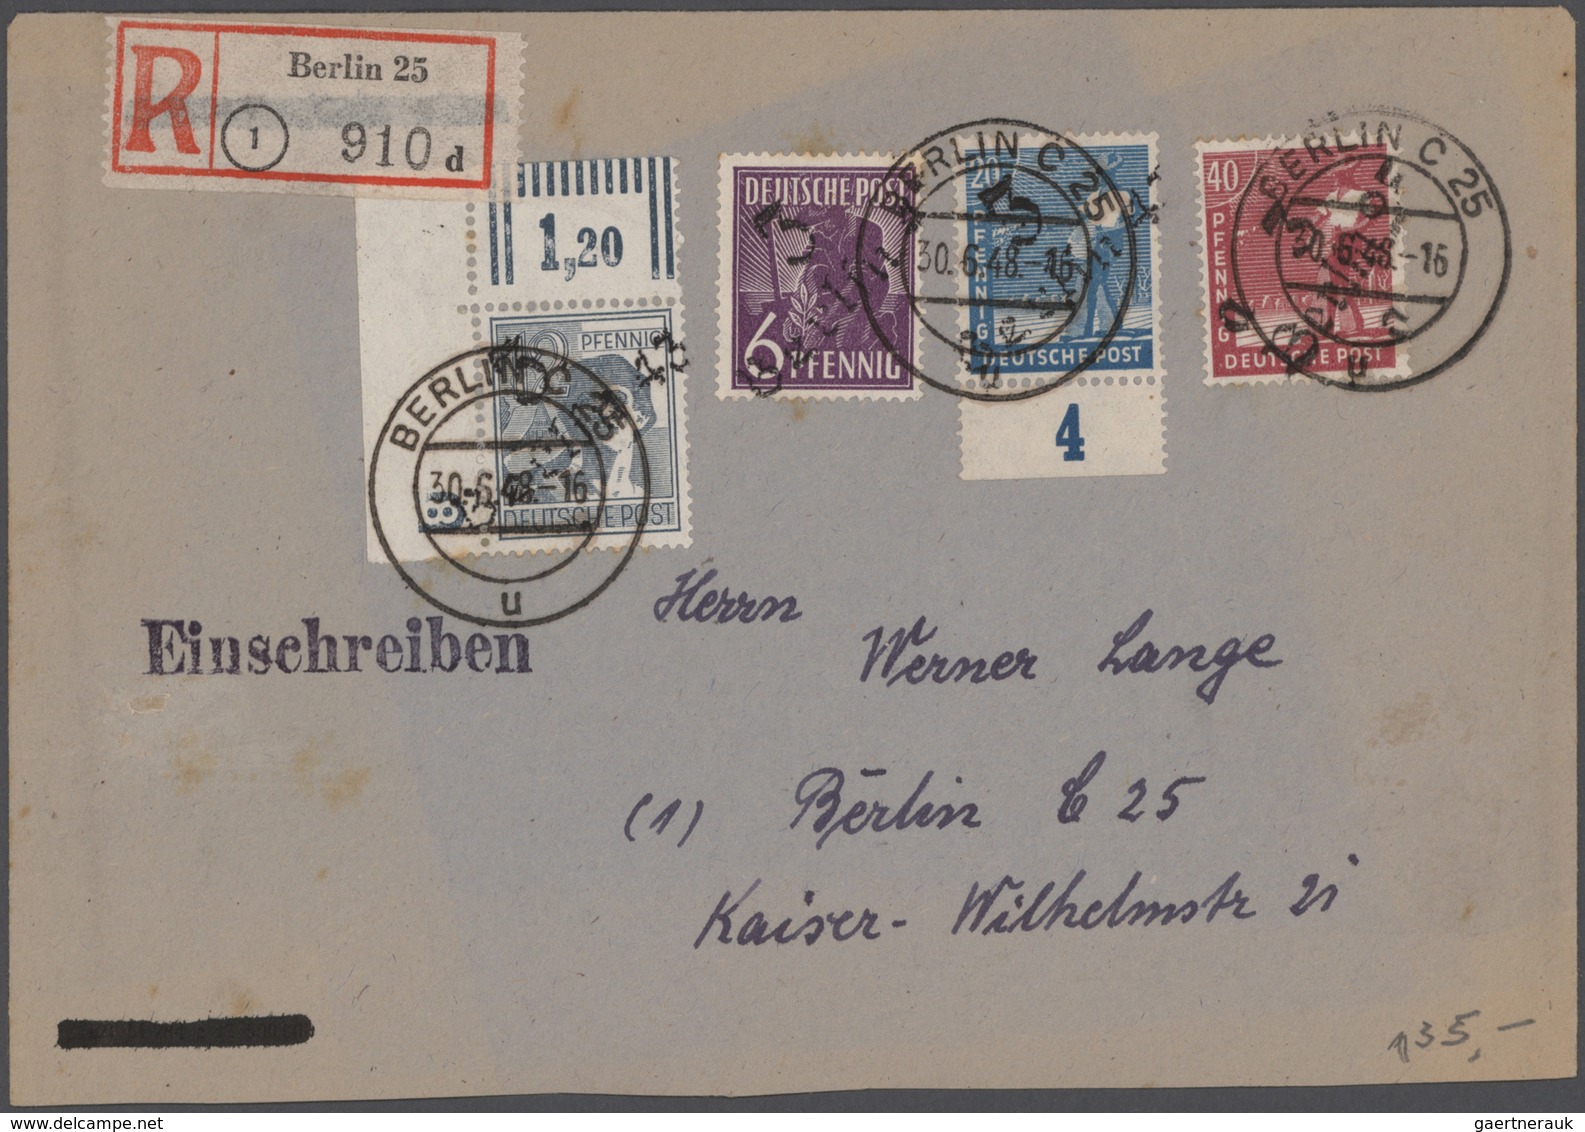 Deutschland nach 1945: 1945-1960, spannender Bestand mit rund 650 Briefen, Belegen und Ganzsachen, d